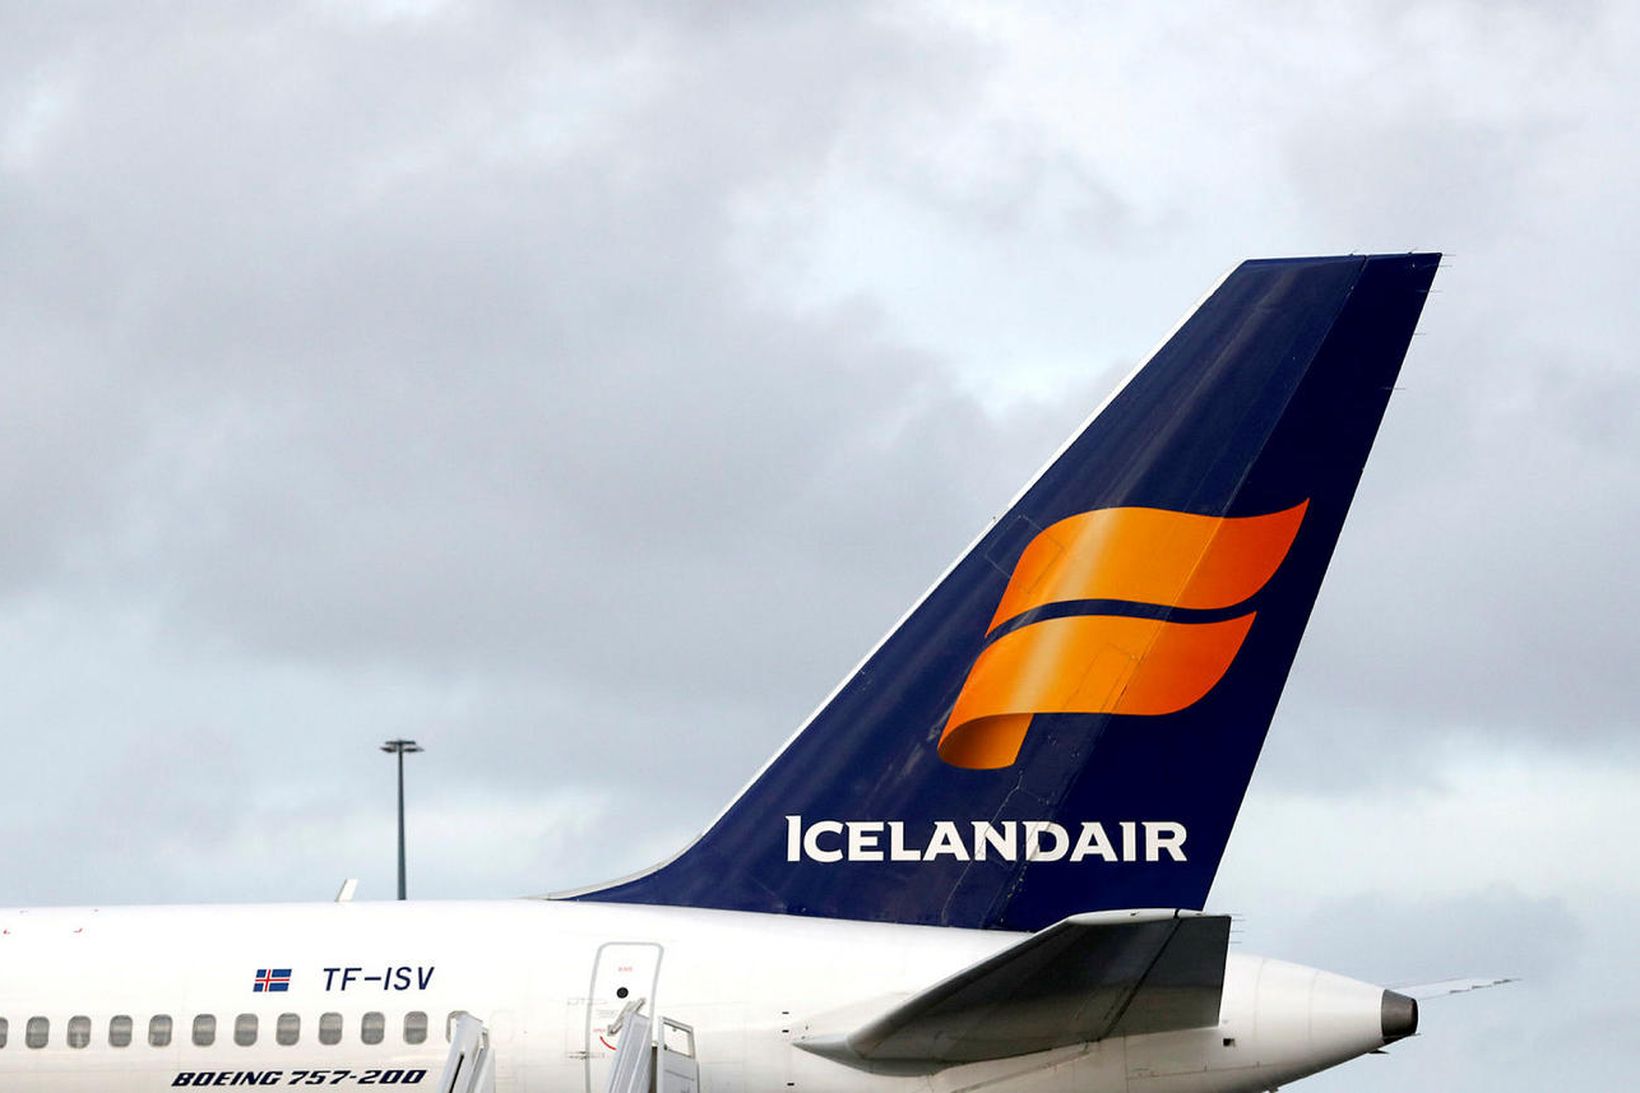 Bréf Icelandair lækkuðu nokkuð við opnun markaða í morgun.